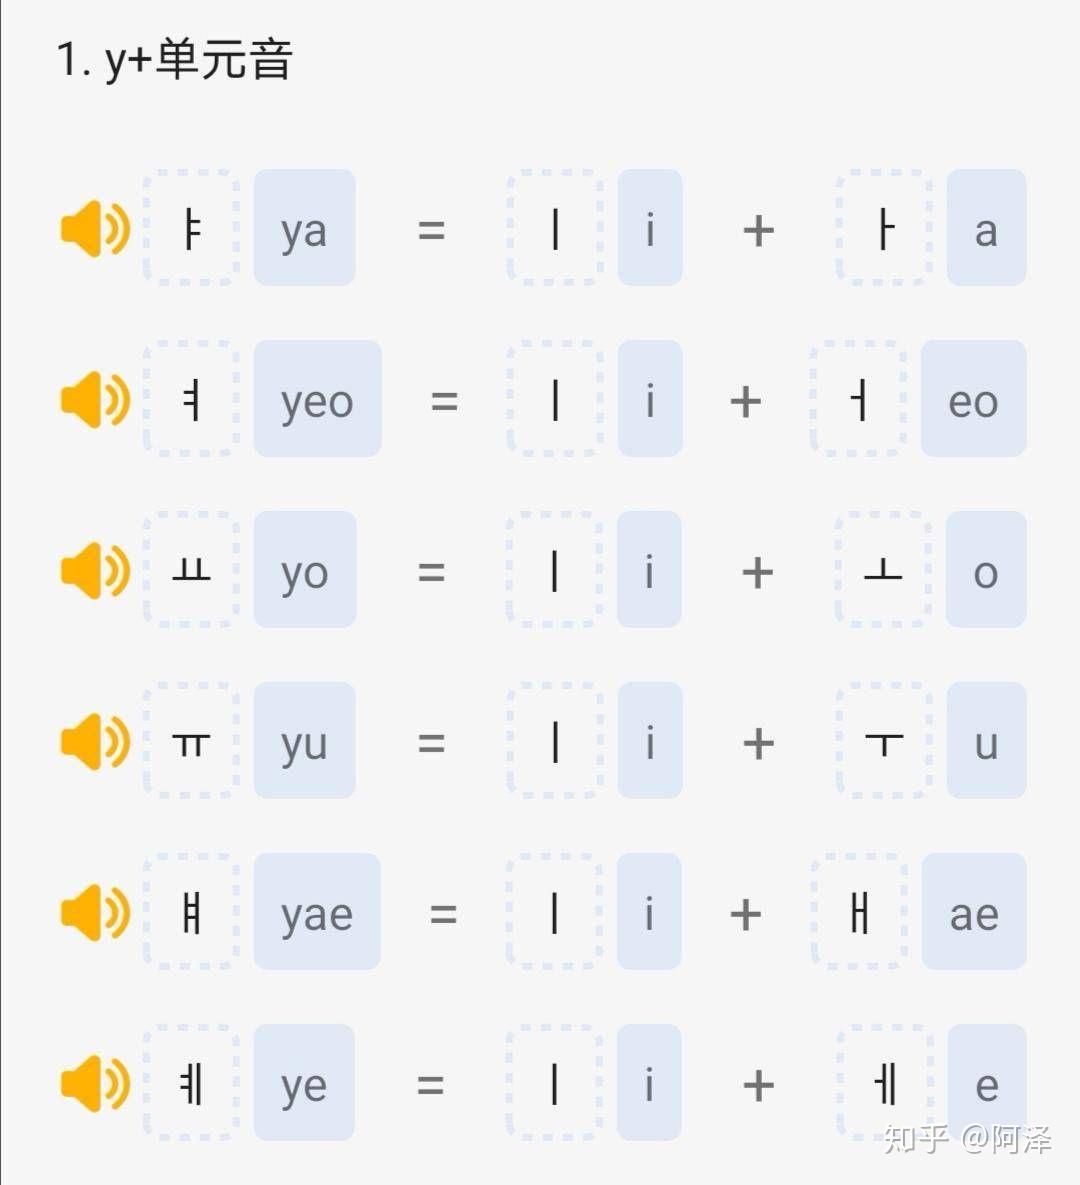 学习韩语字母表 - 24小时快速学会韩语口语发音